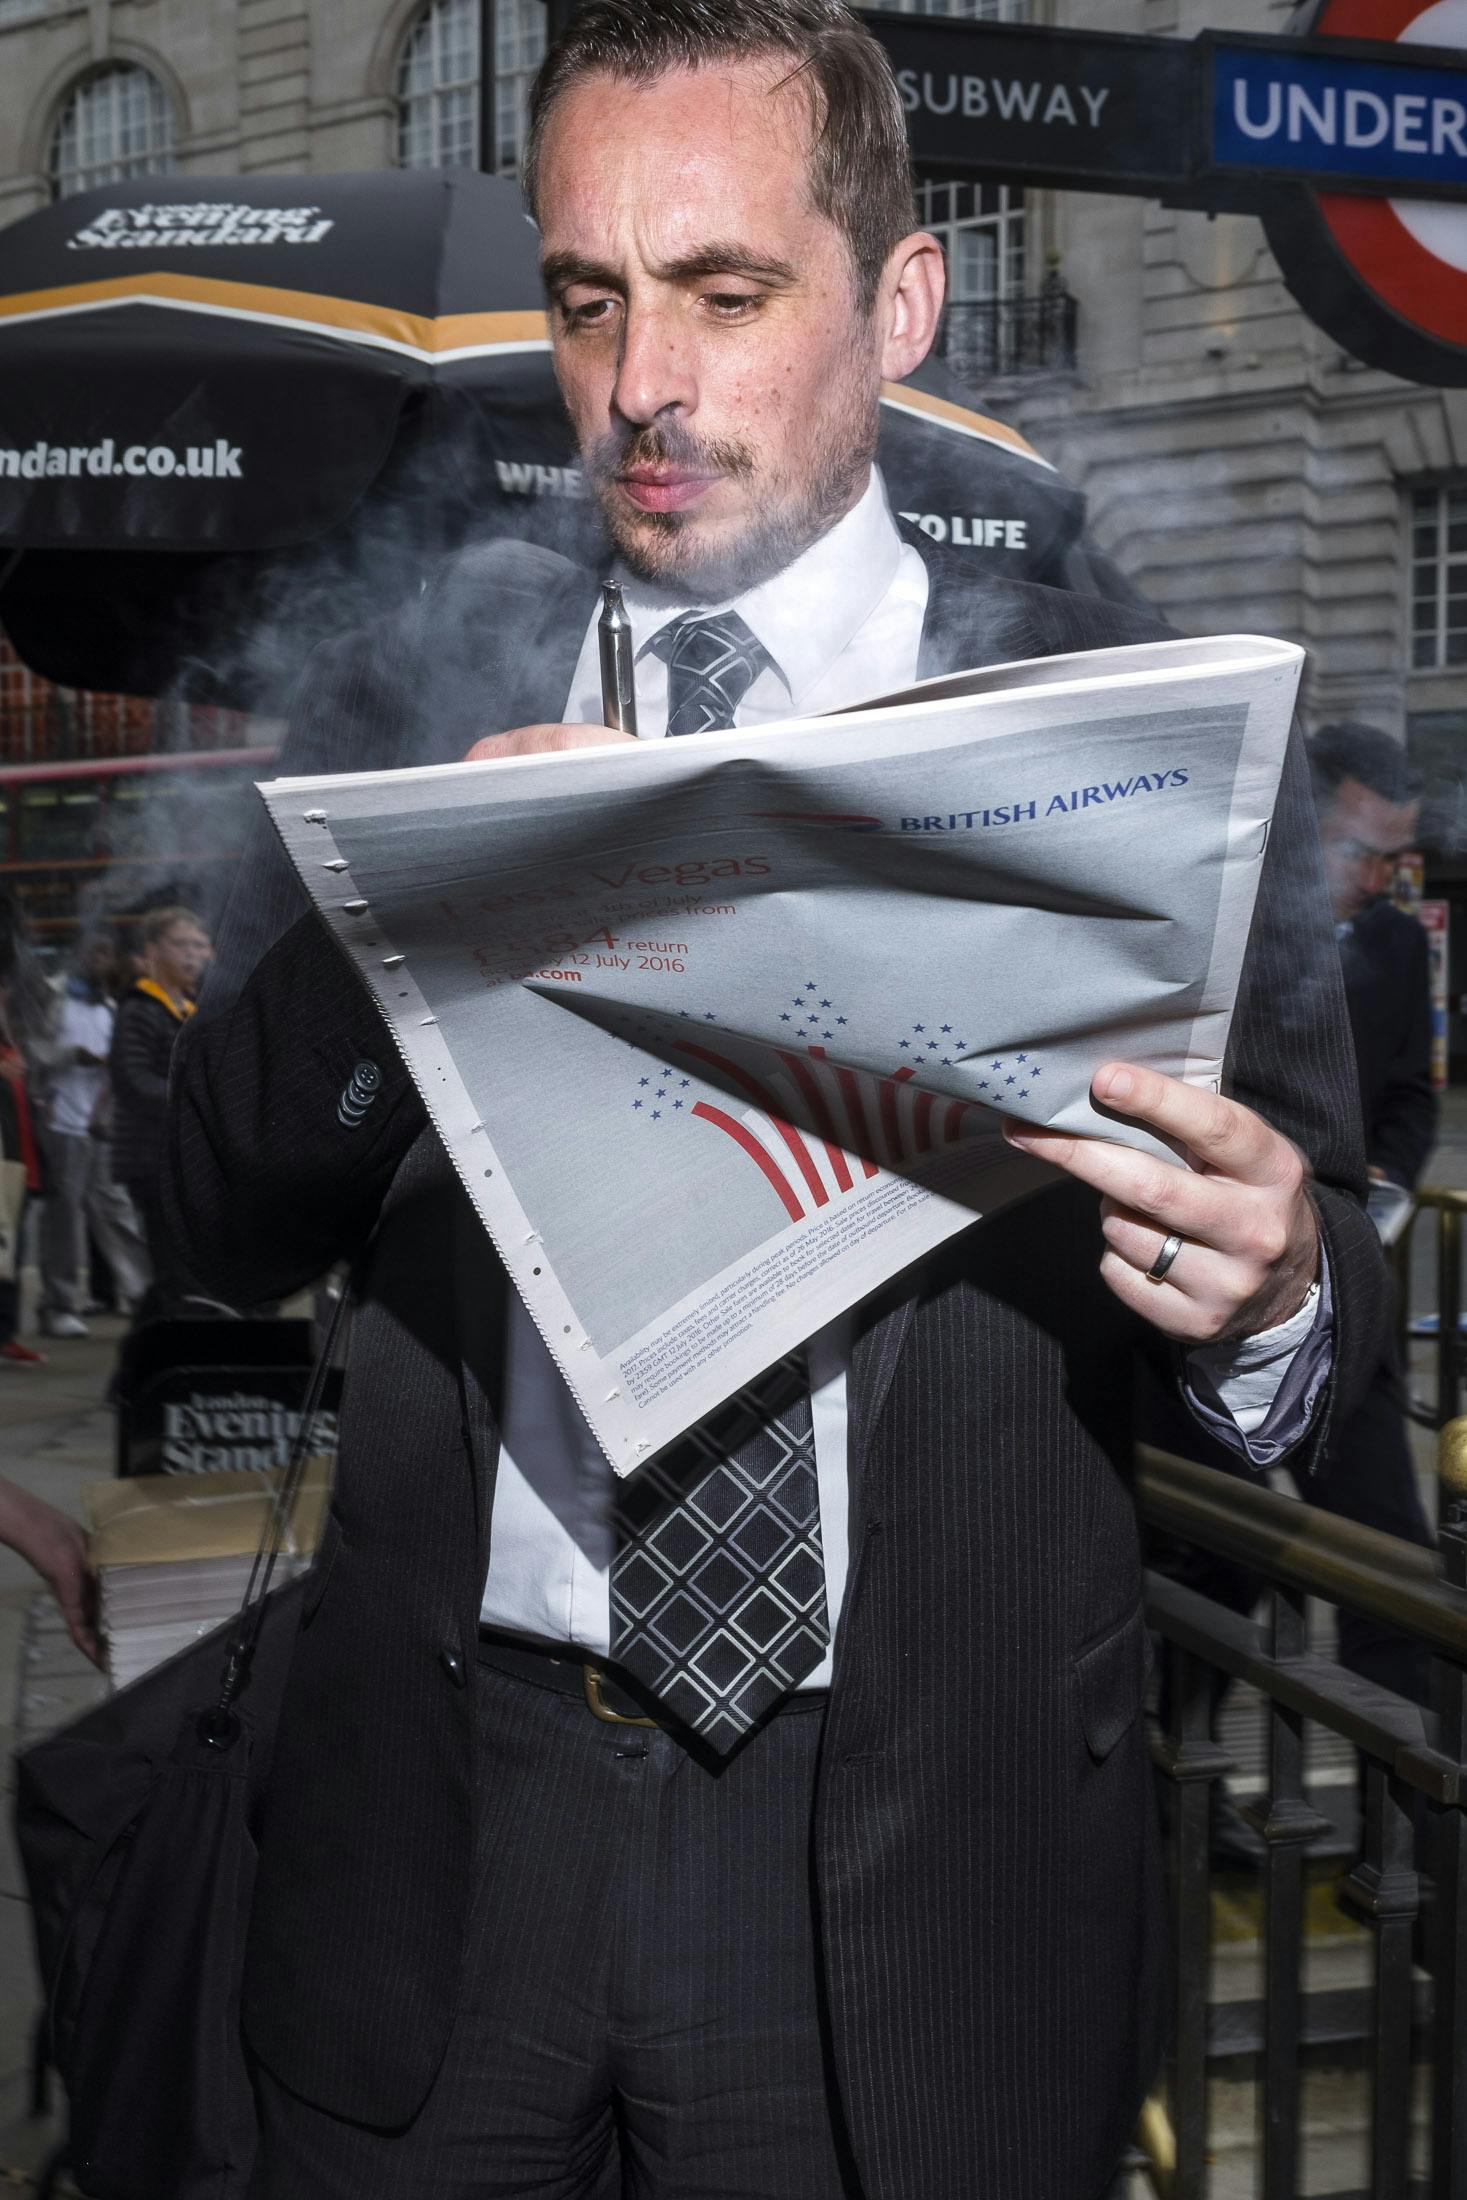 Busines man smoking vape in London reading newspaper 